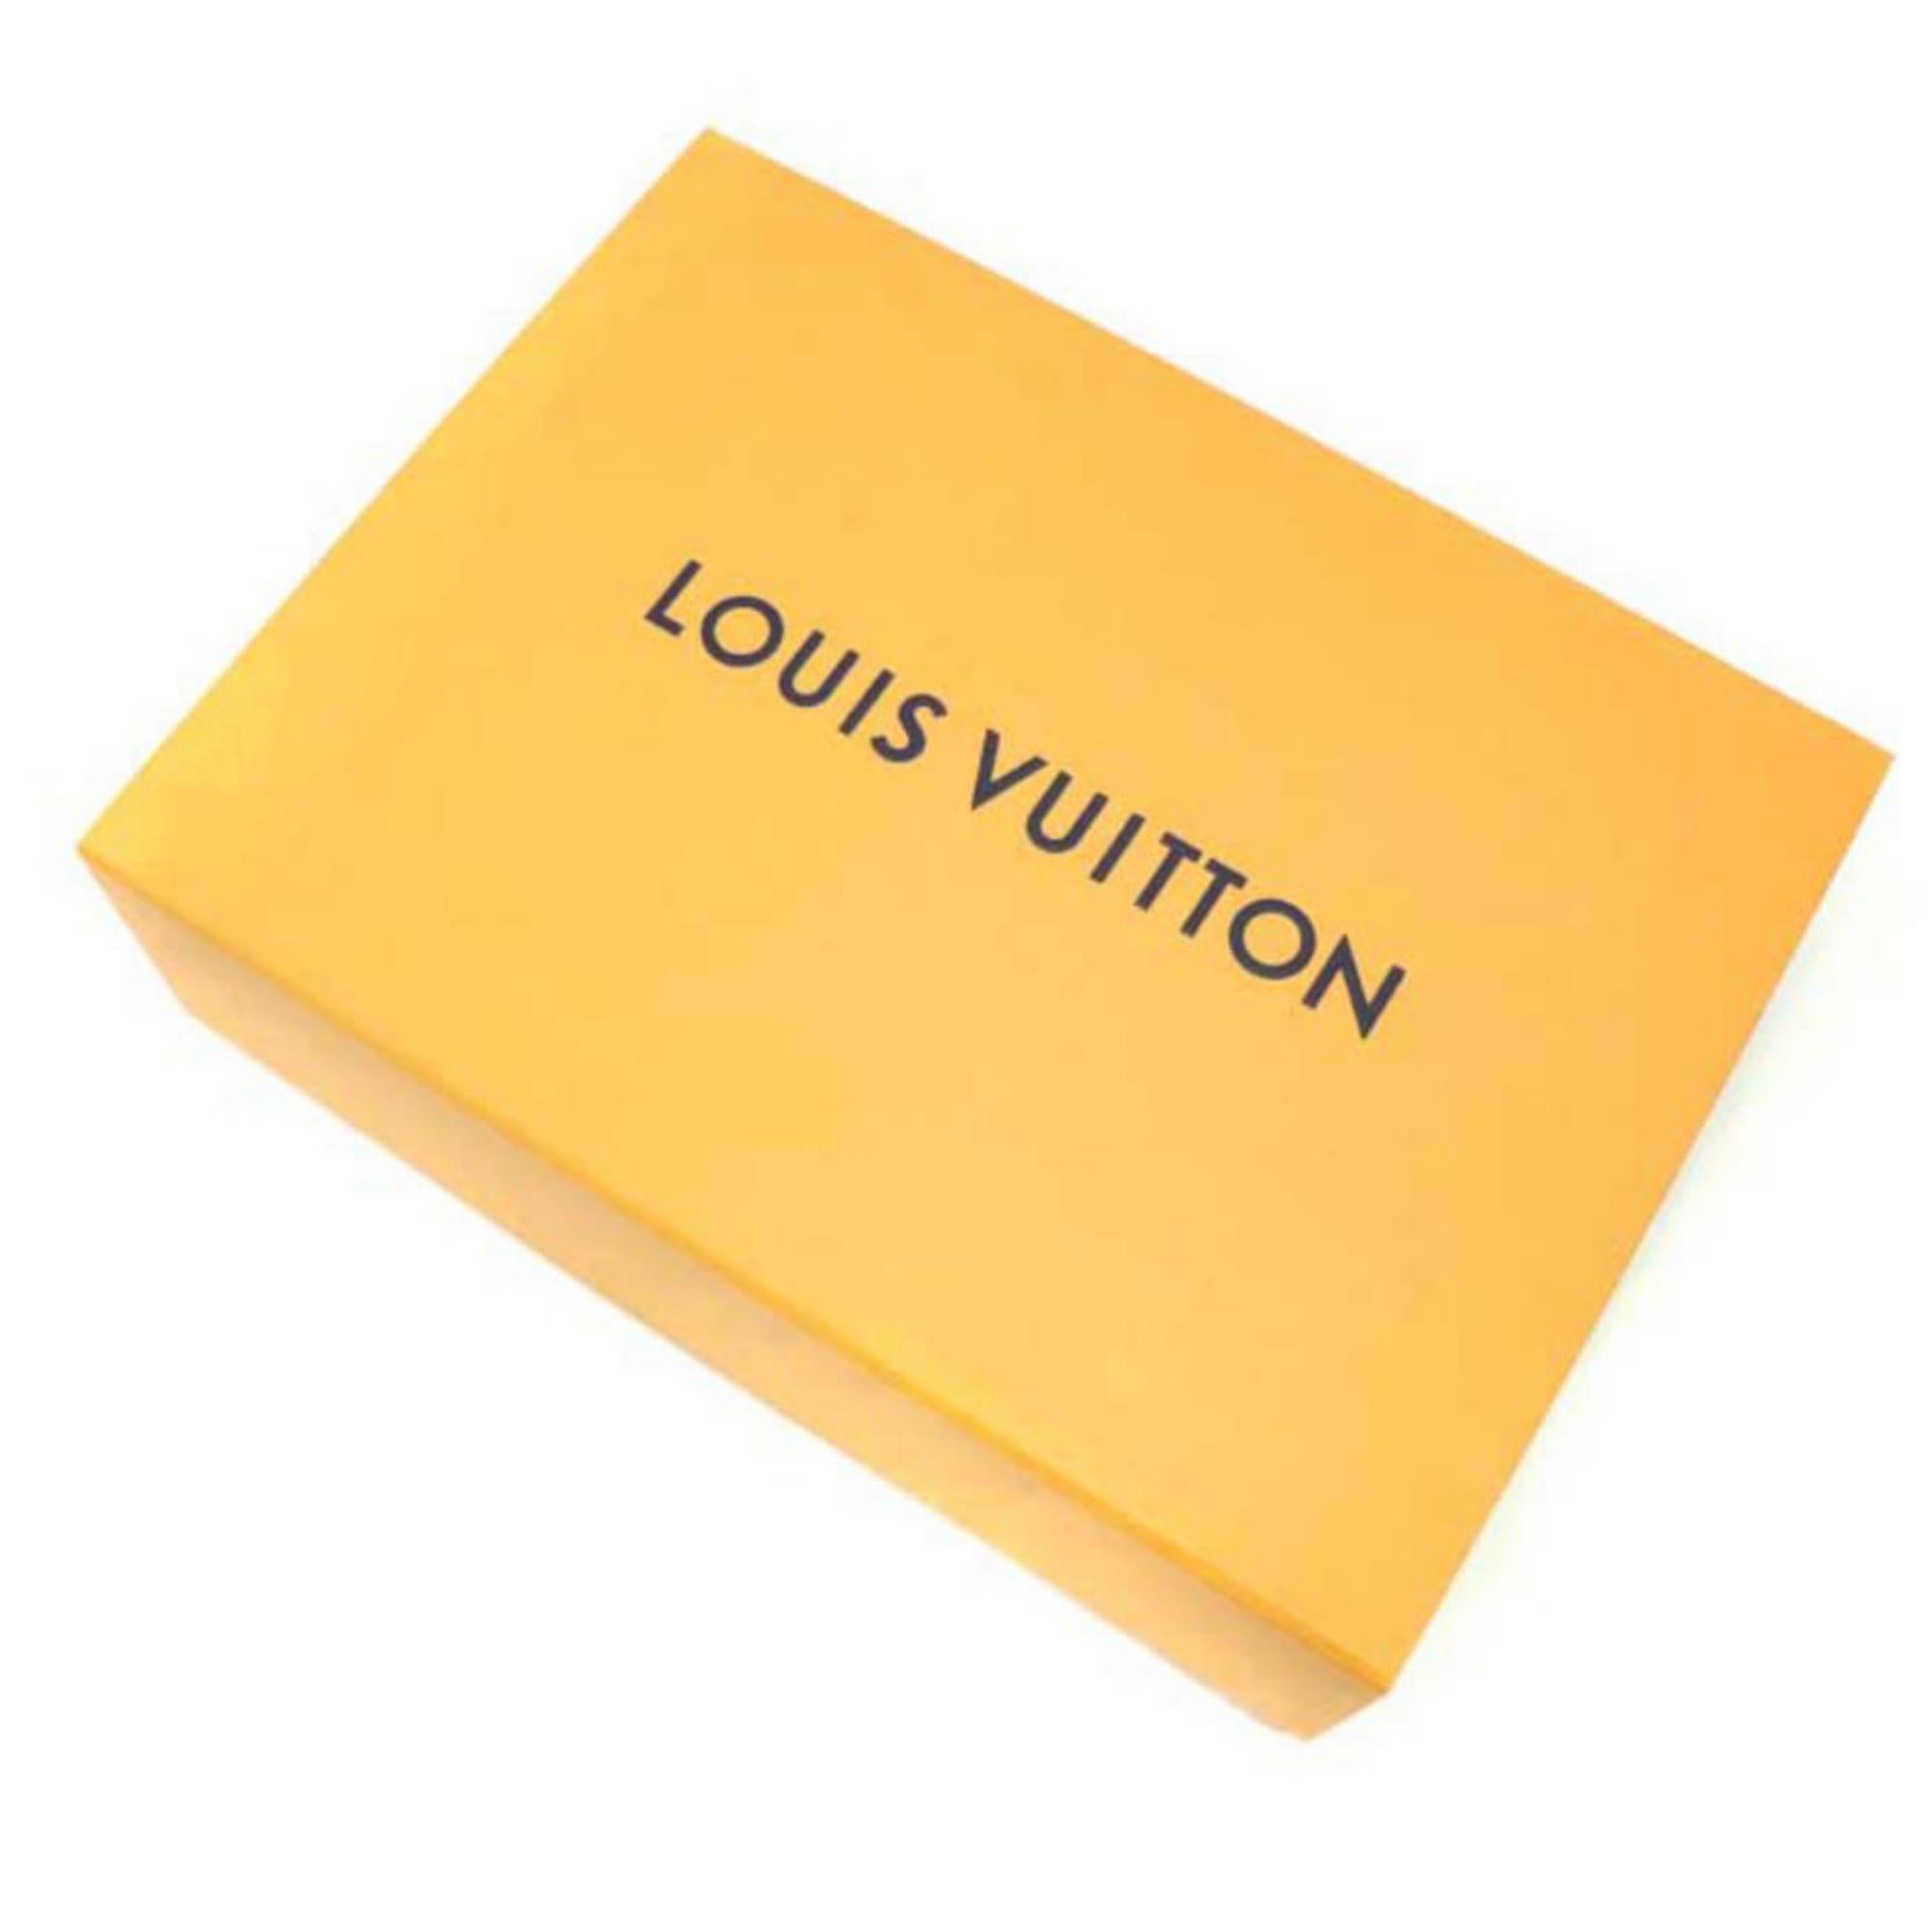 Louis Vuitton Black Ss19 Virgil Abloh Leather Noir Baseball Cap 870231 Hat For Sale 3